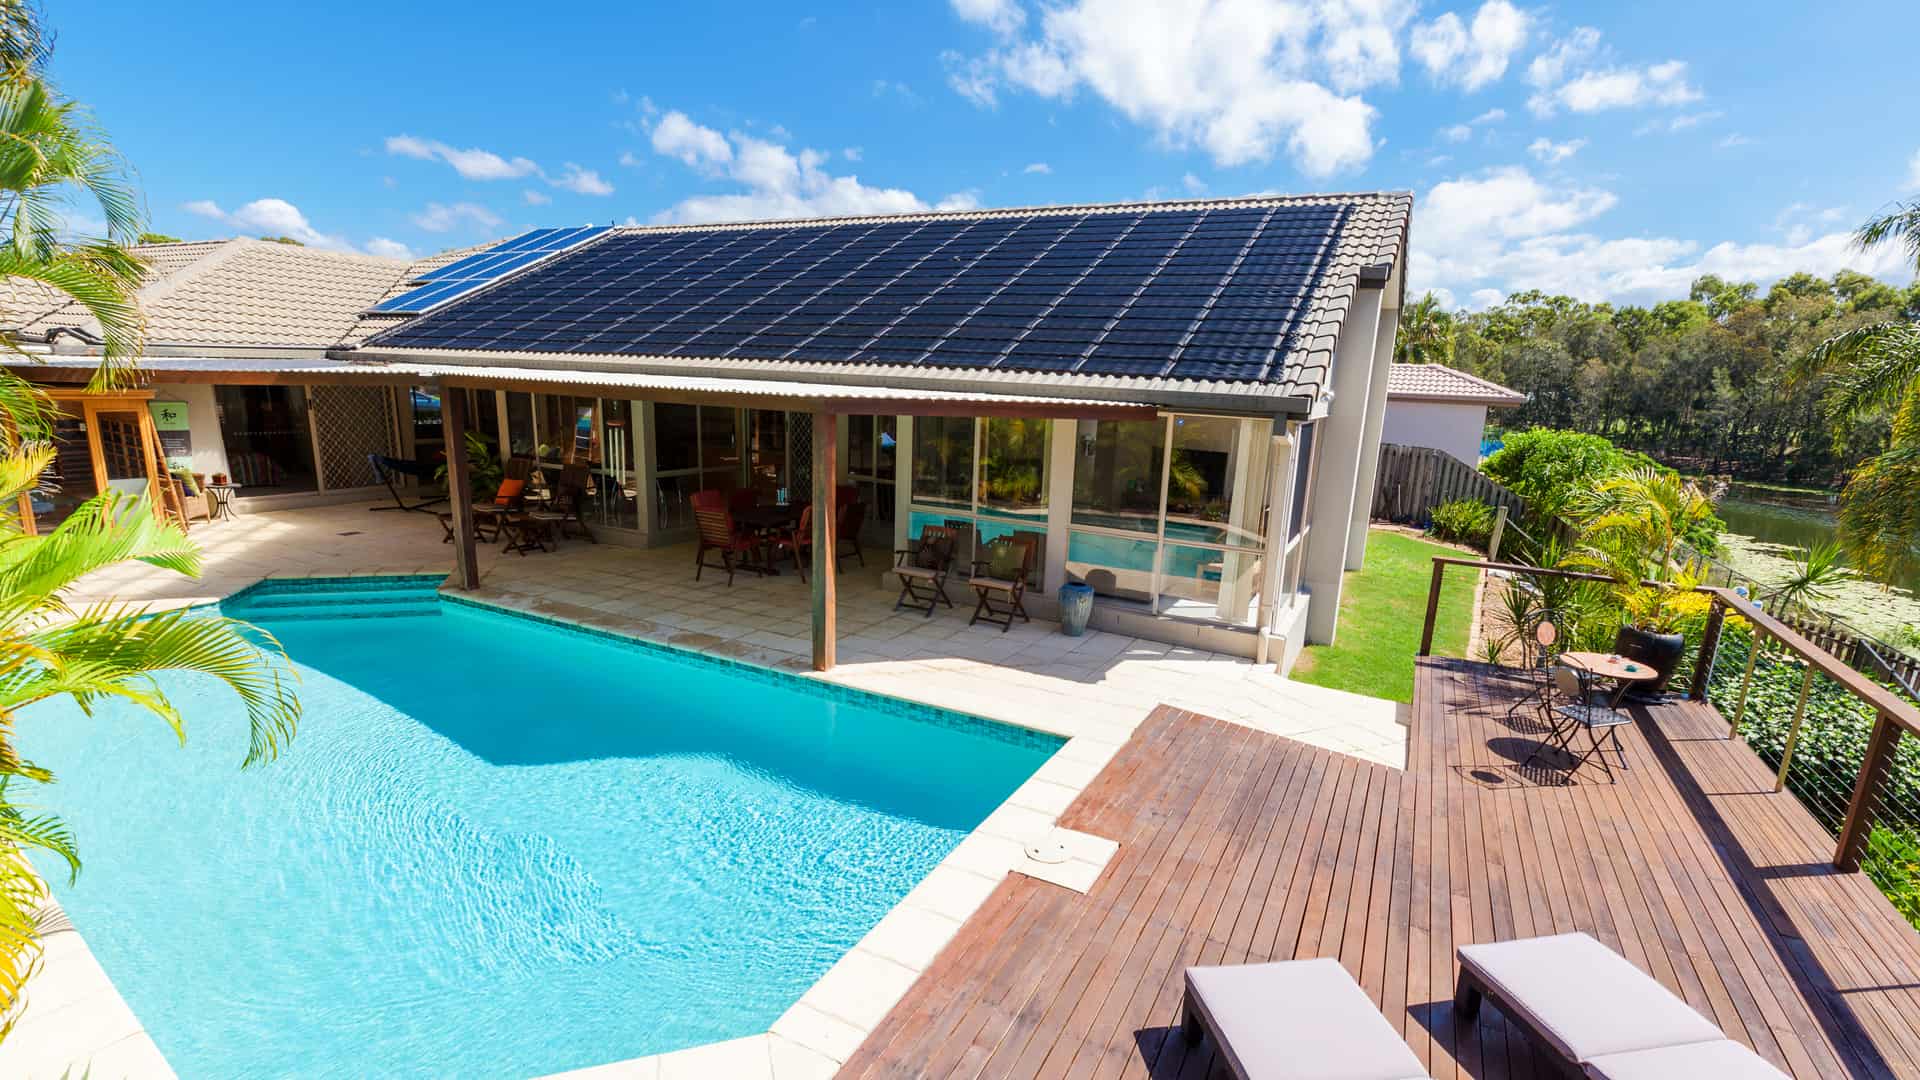 Vivienda con placas solares las cuales se encuentran incluidas en el seguro de hogar